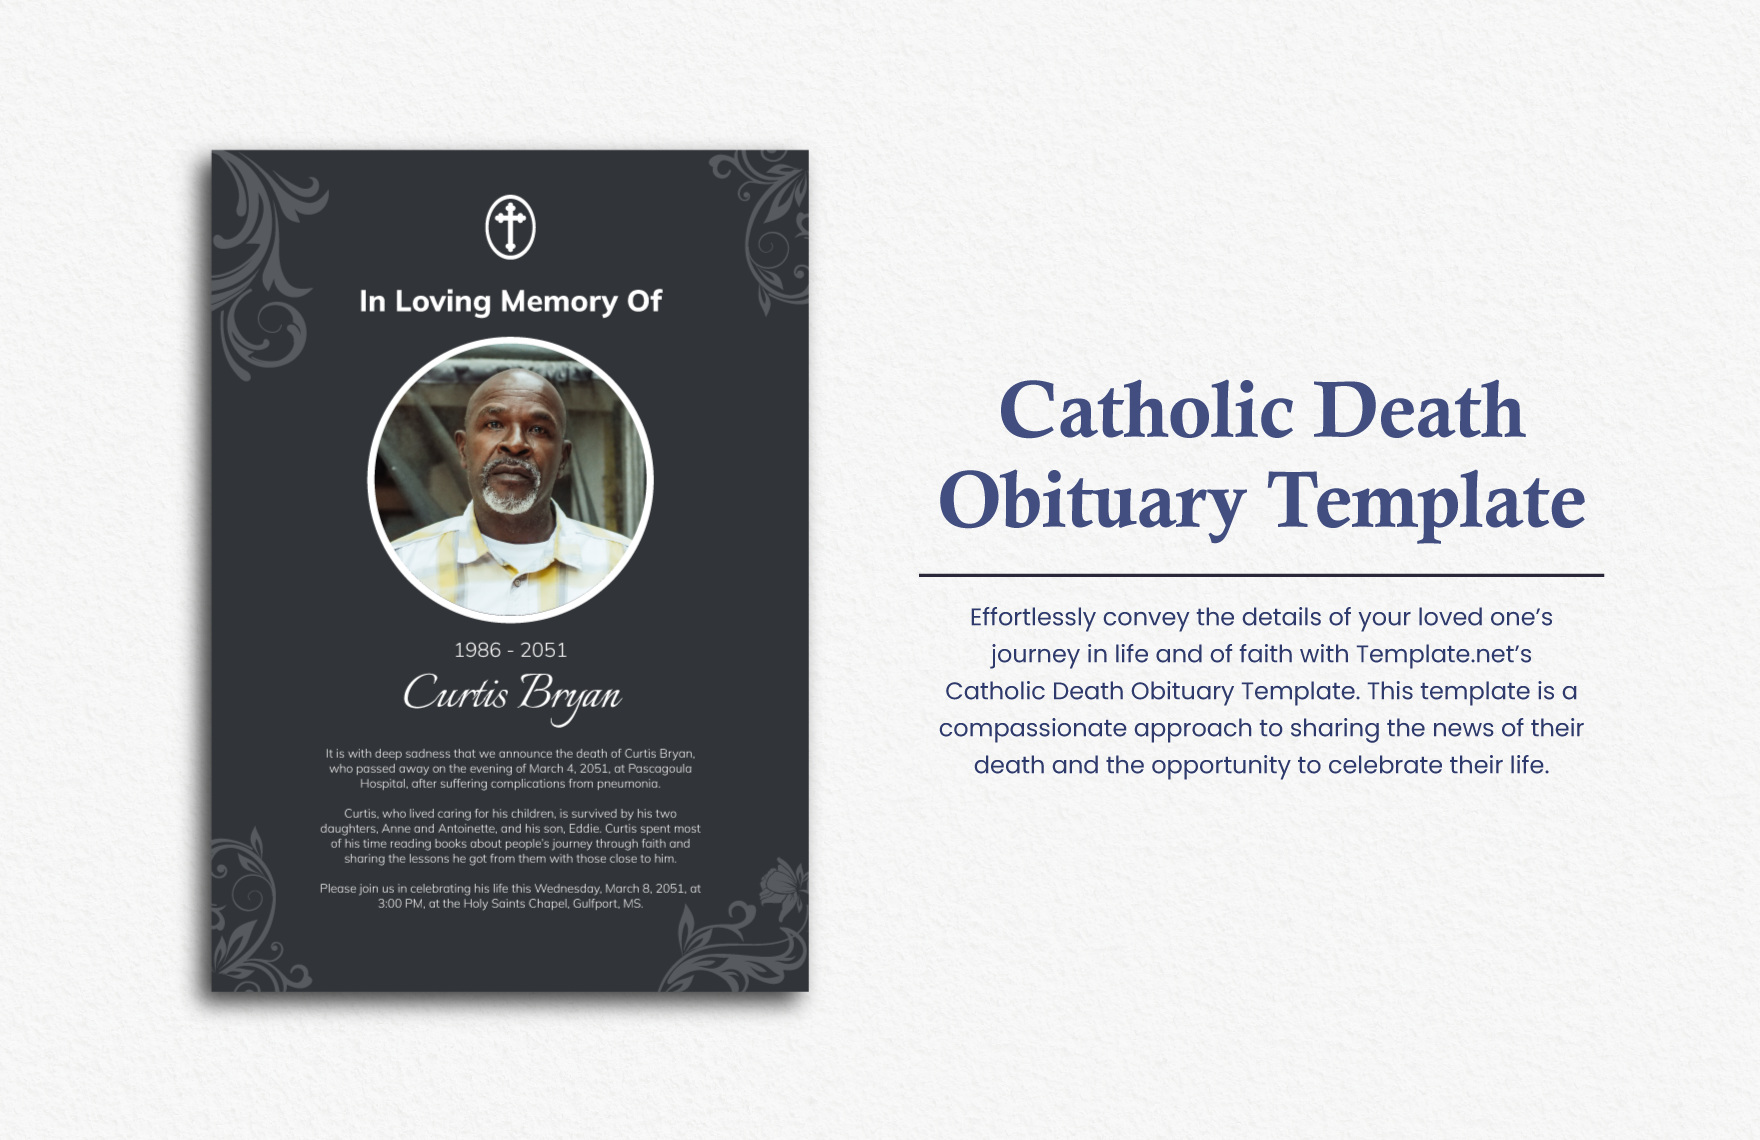 Catholic Death Obituary Template